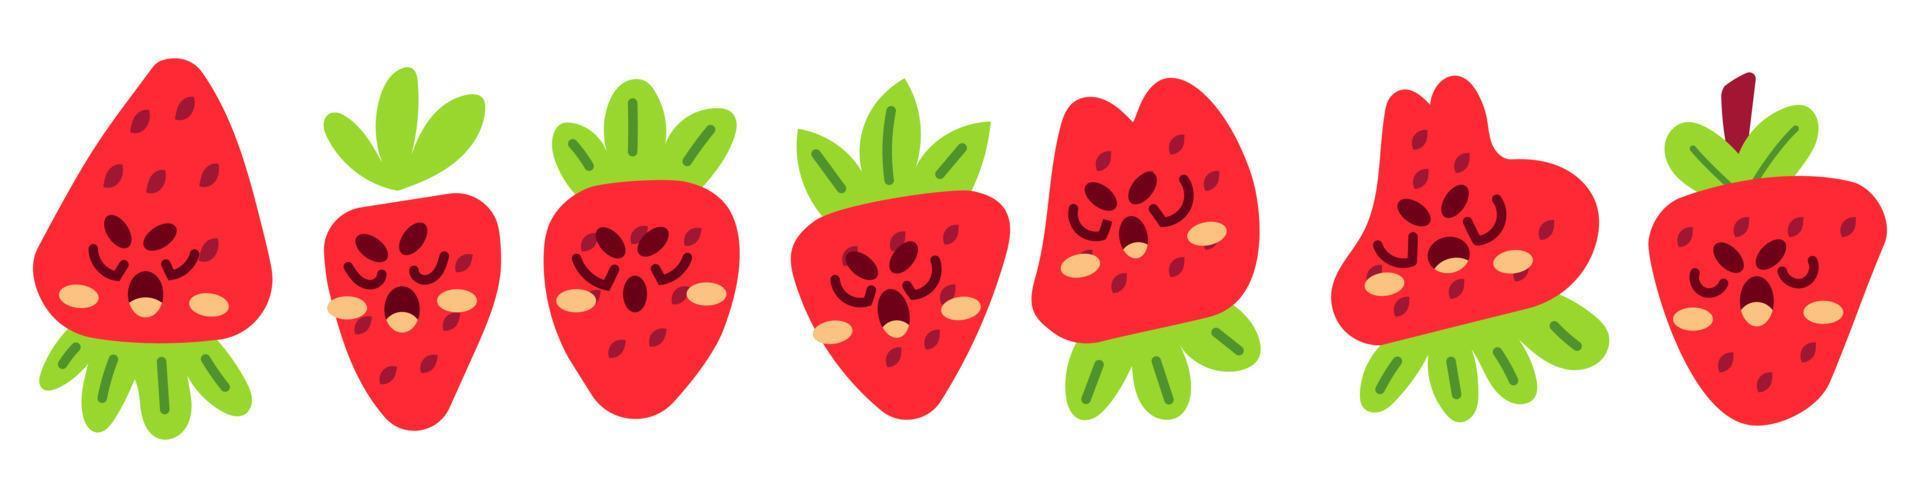 samling av söta jordgubbar uttryckssymbol vektor